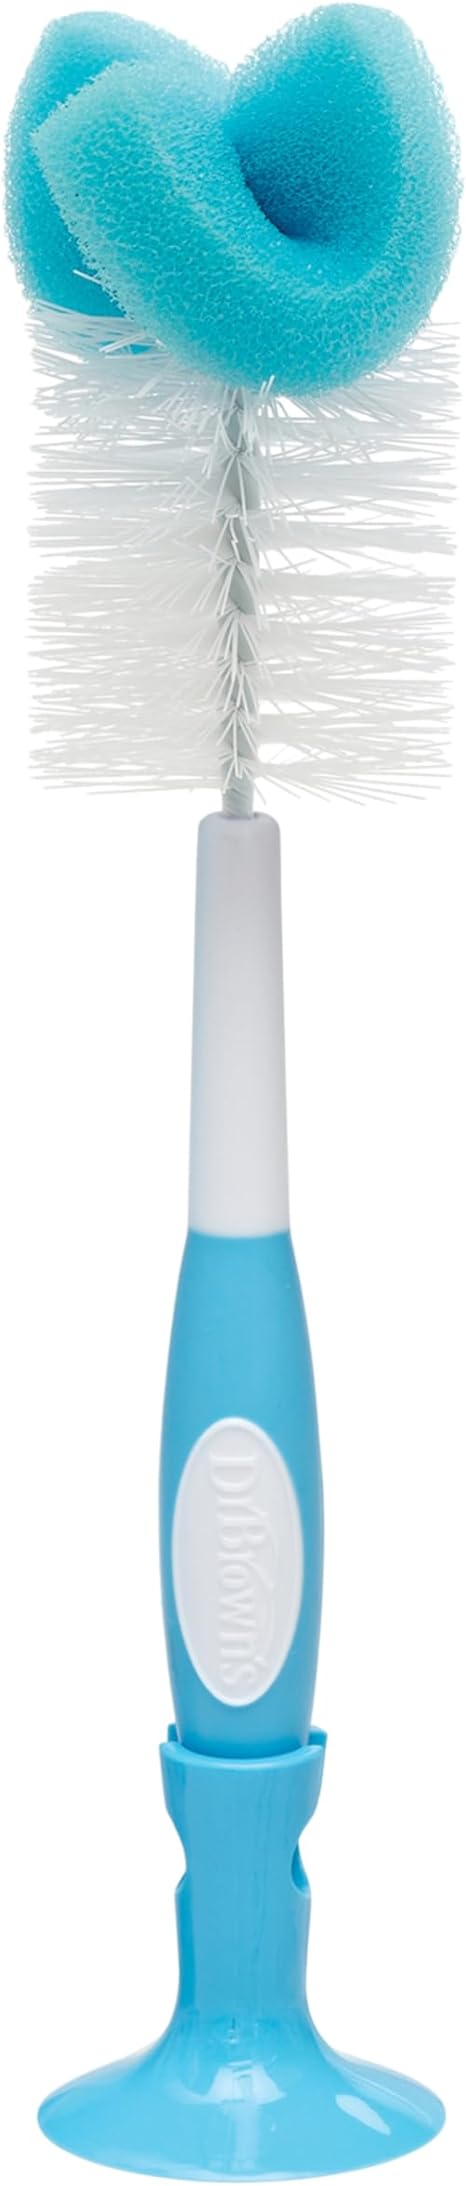 Dr Browns Natural Flow Bottle Brush, Blue, Large (700)